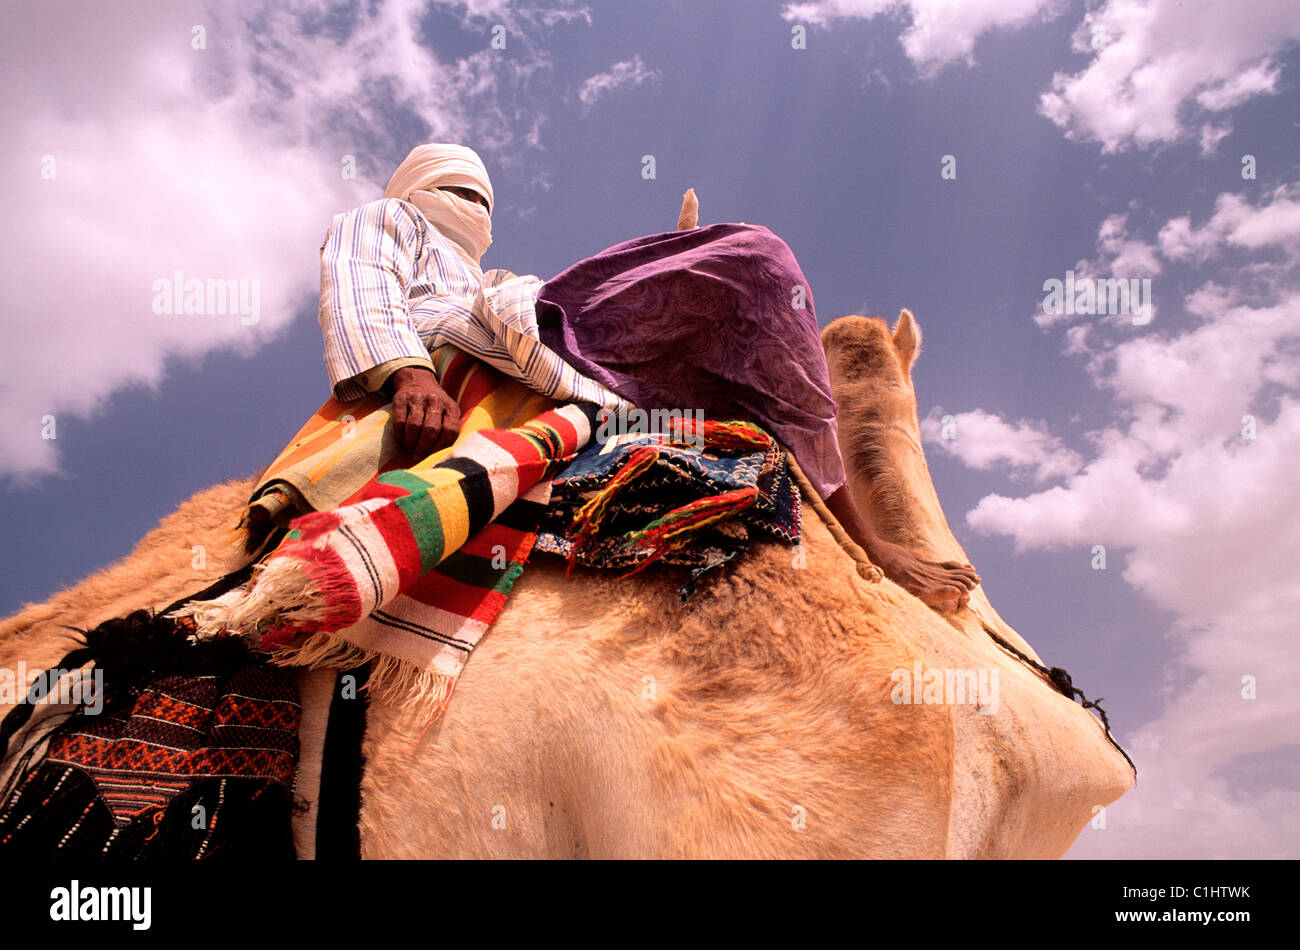 L'Algérie, touareg sur son chameau Banque D'Images